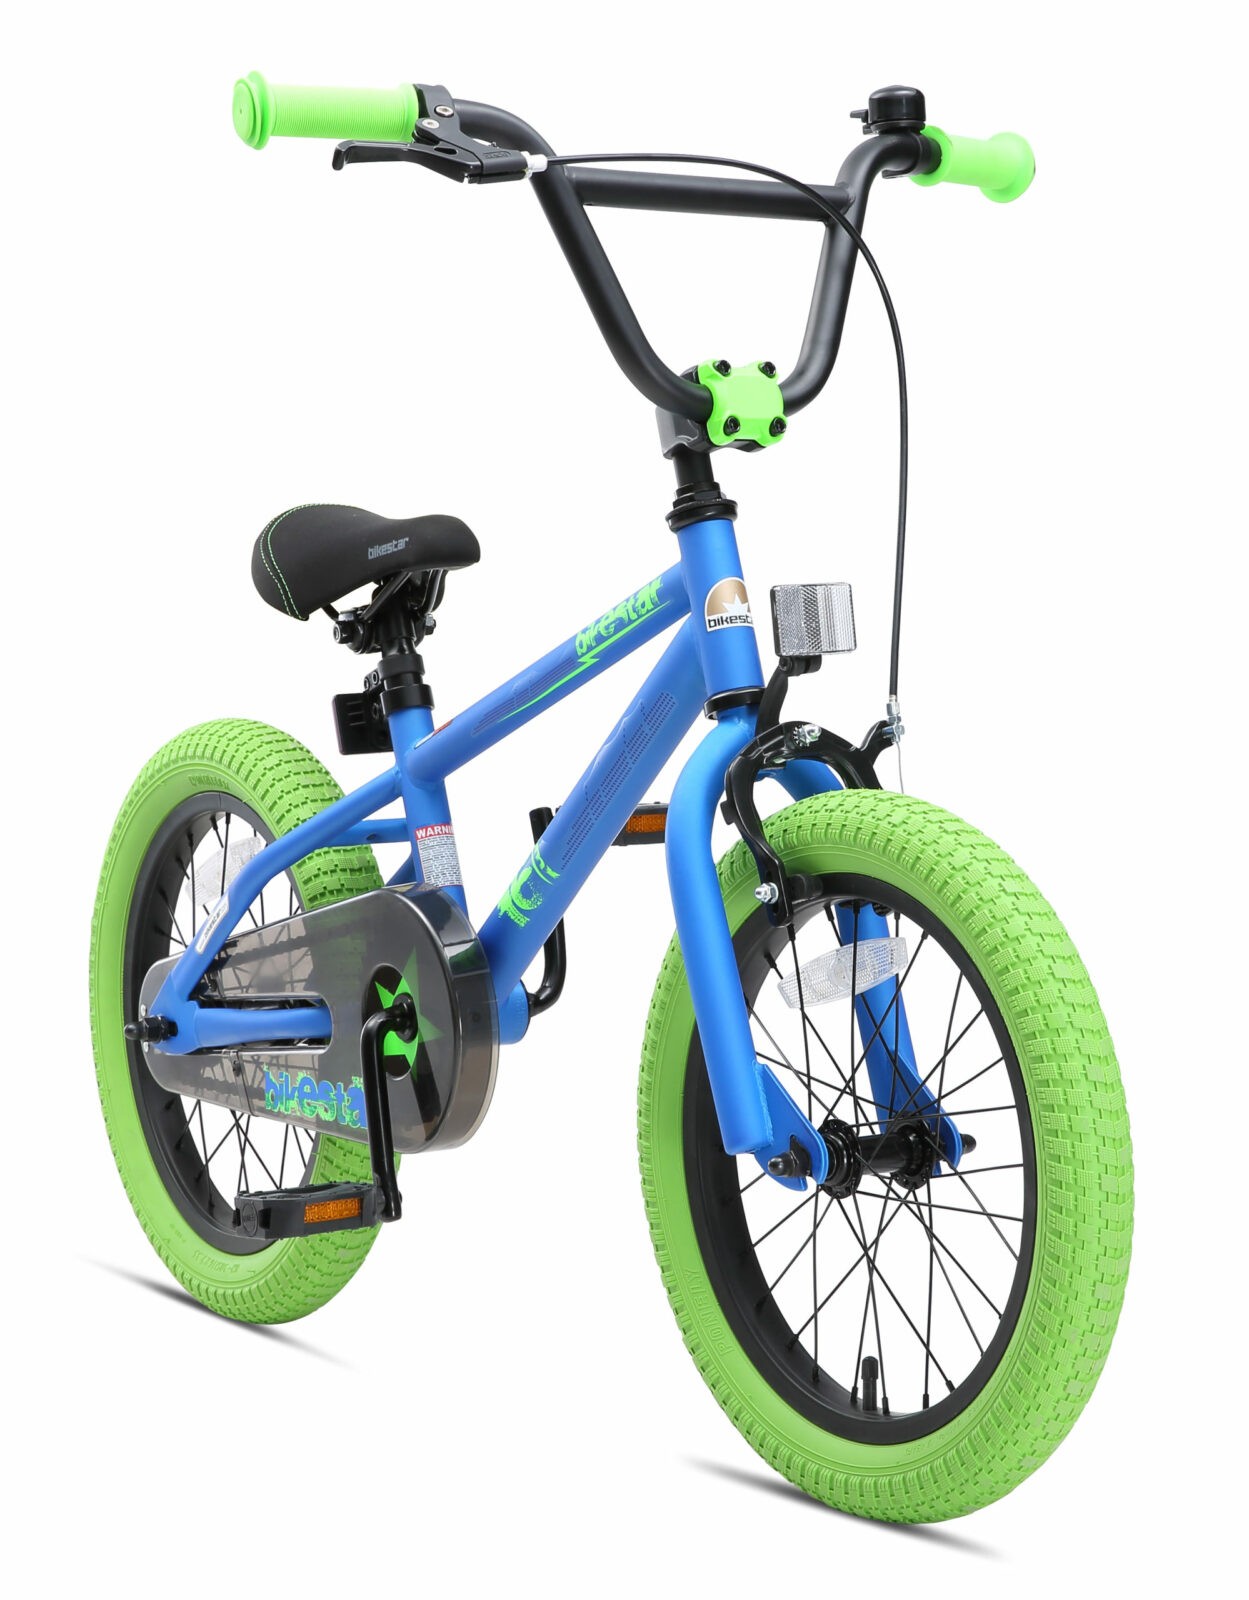 tegenkomen Aanbeveling versus Bikestar 16 inch BMX kinderfiets, blauw / groen - Fietsdirect